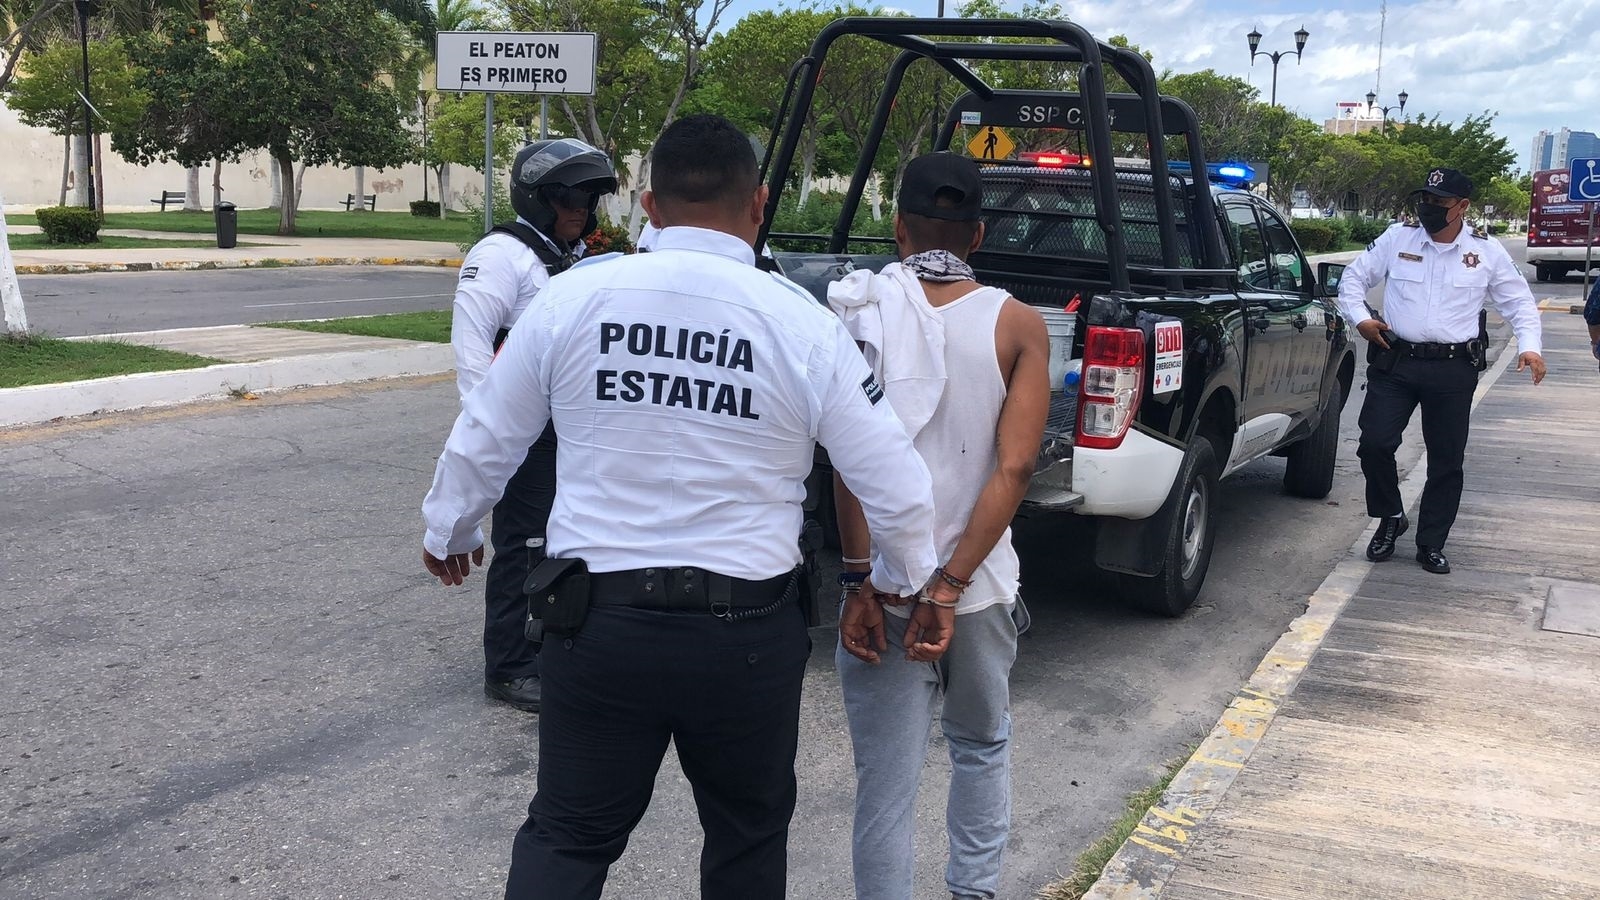 Aumenta 5% en la percepción de inseguridad en la capital de Campeche en tres meses: Inegi